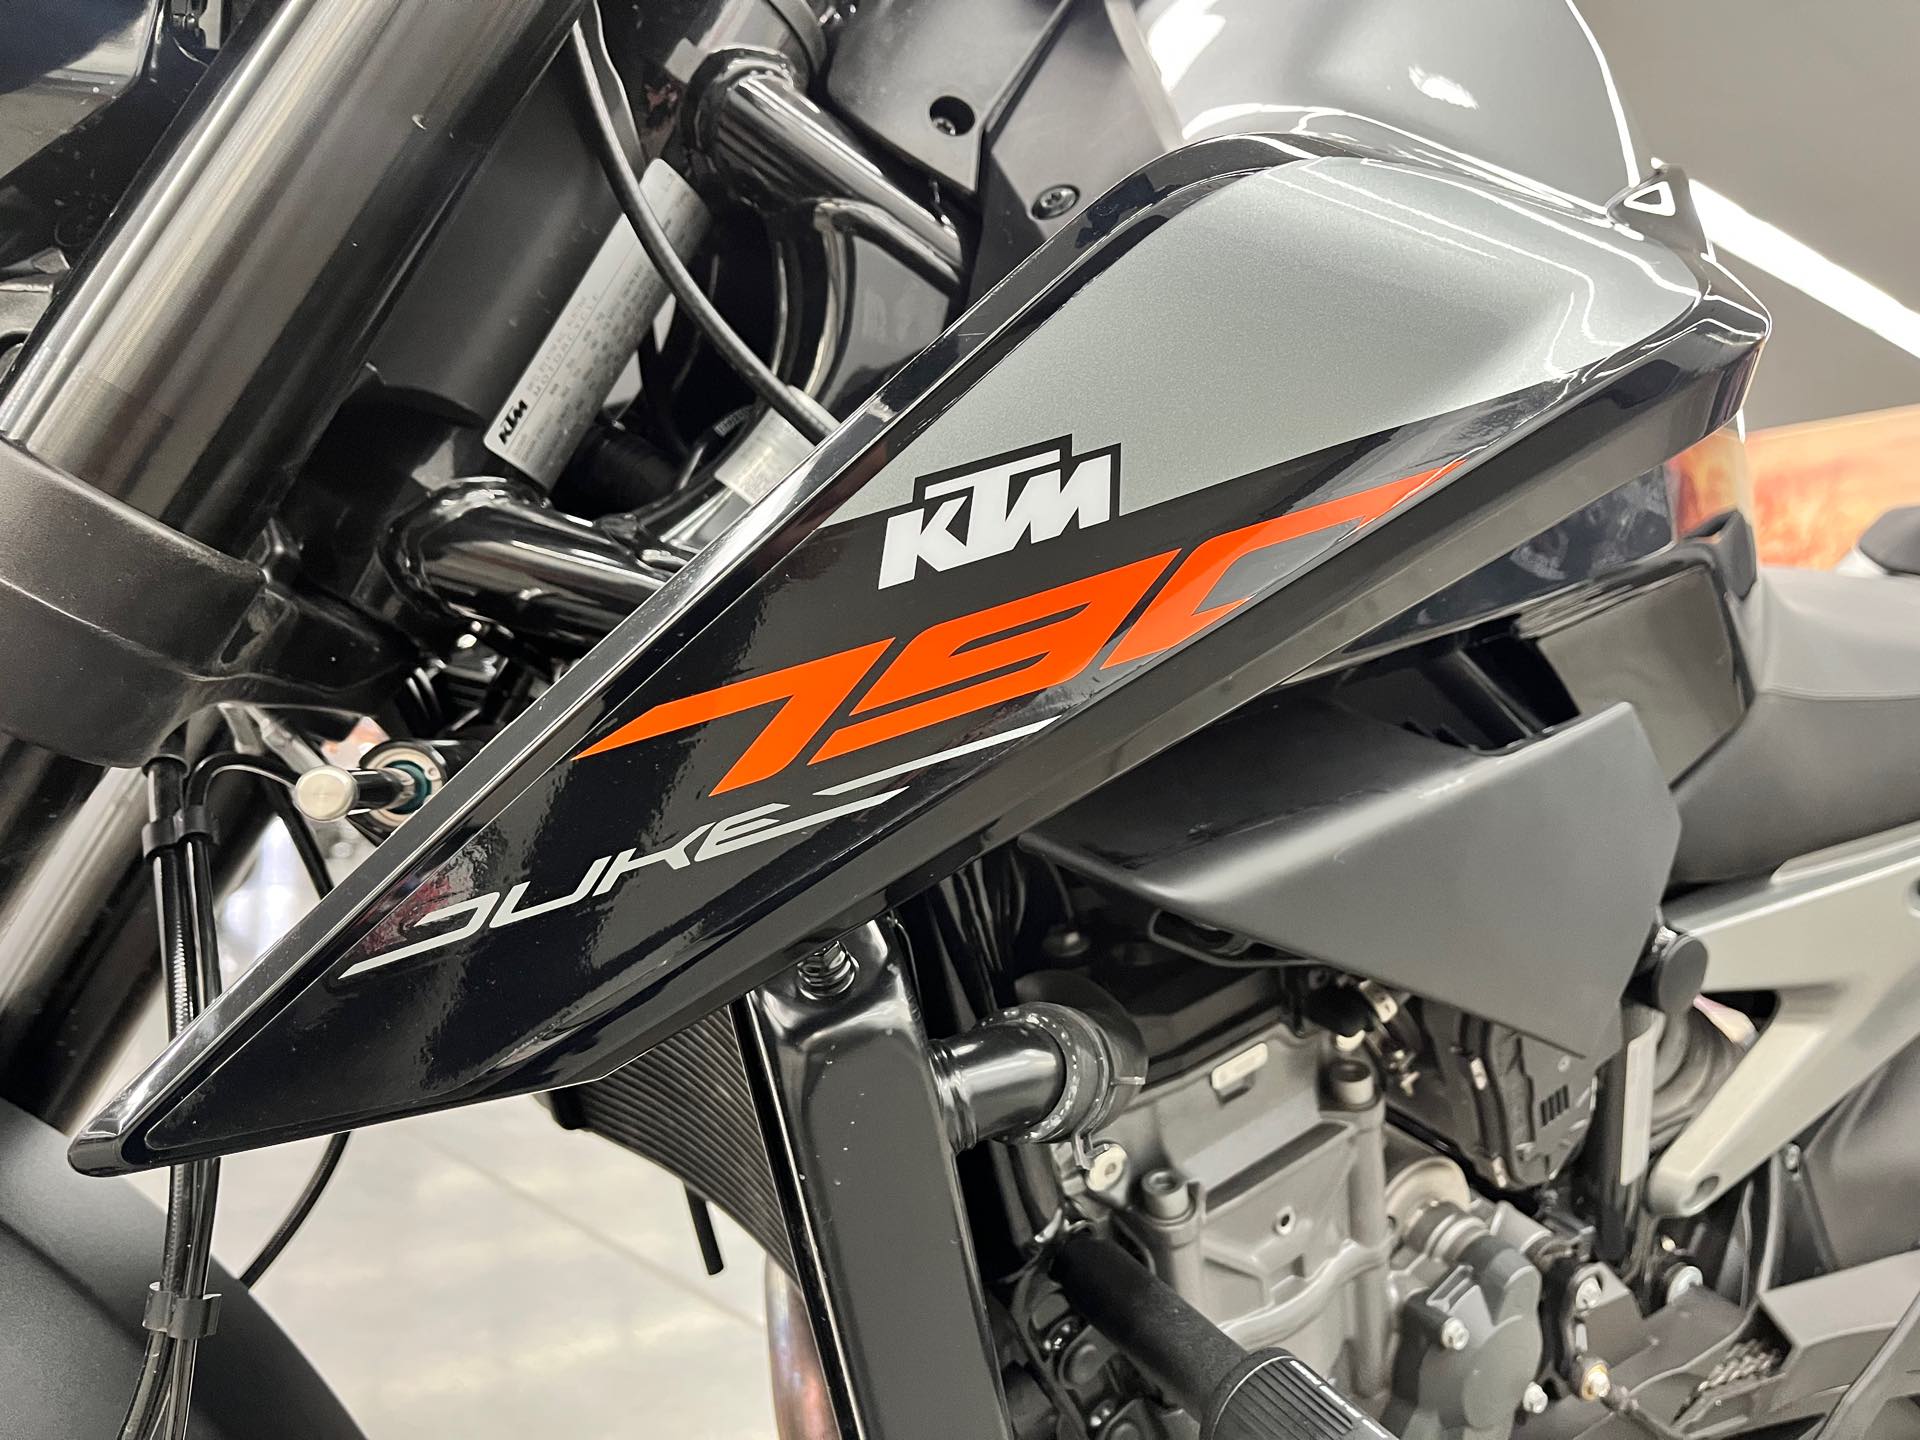 2019 KTM Duke 790 at Aces Motorcycles - Denver